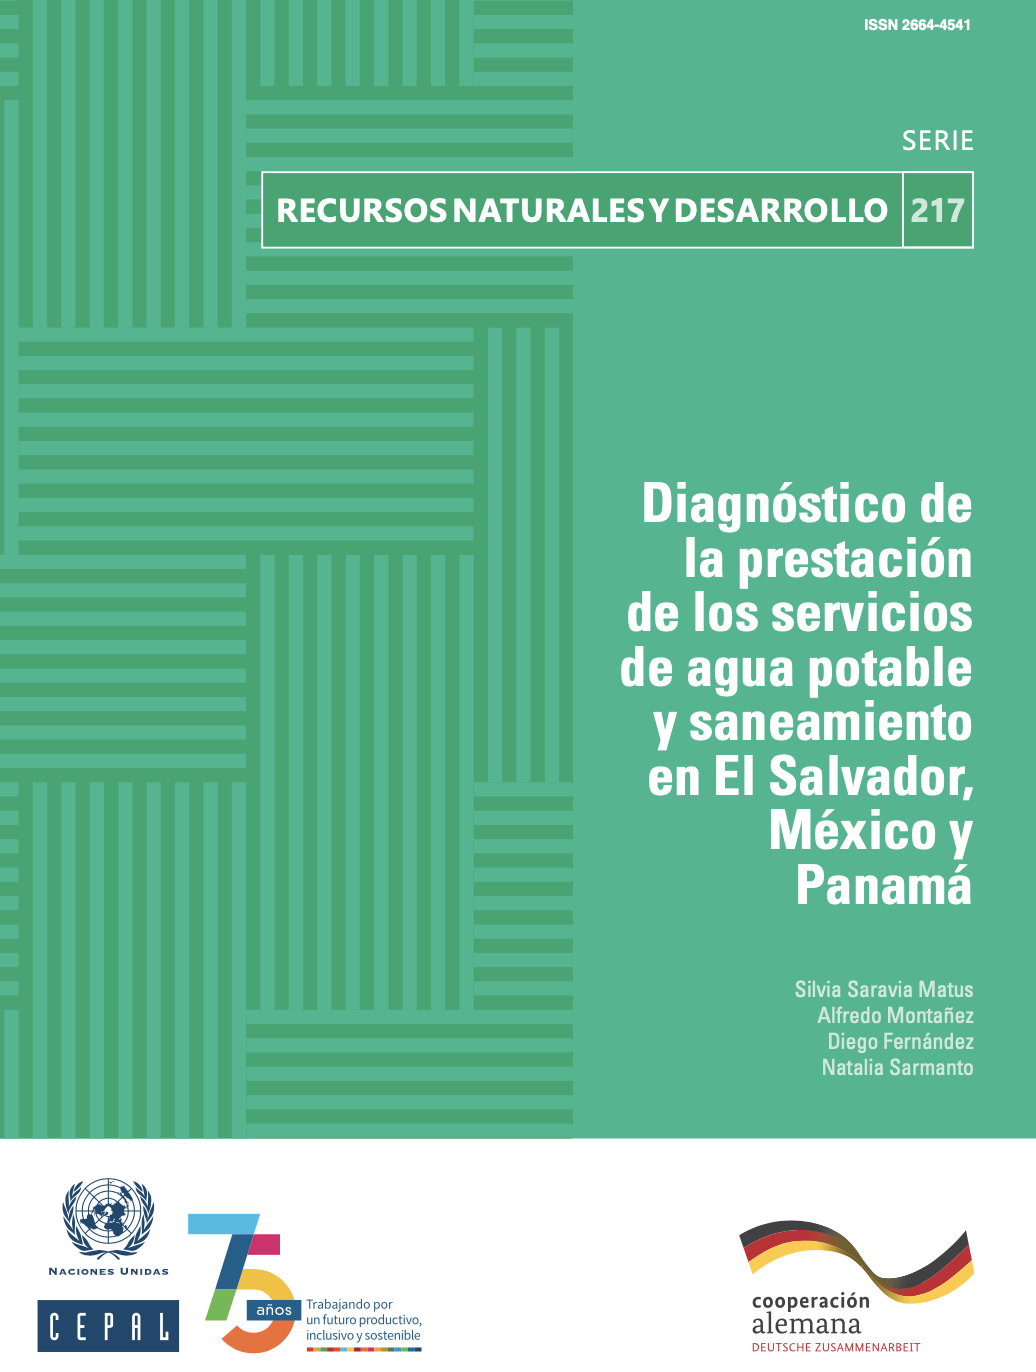 Diagnóstico de la prestación de los servicios de agua potable y saneamiento en El Salvador, México y Panamá (CEPAL)